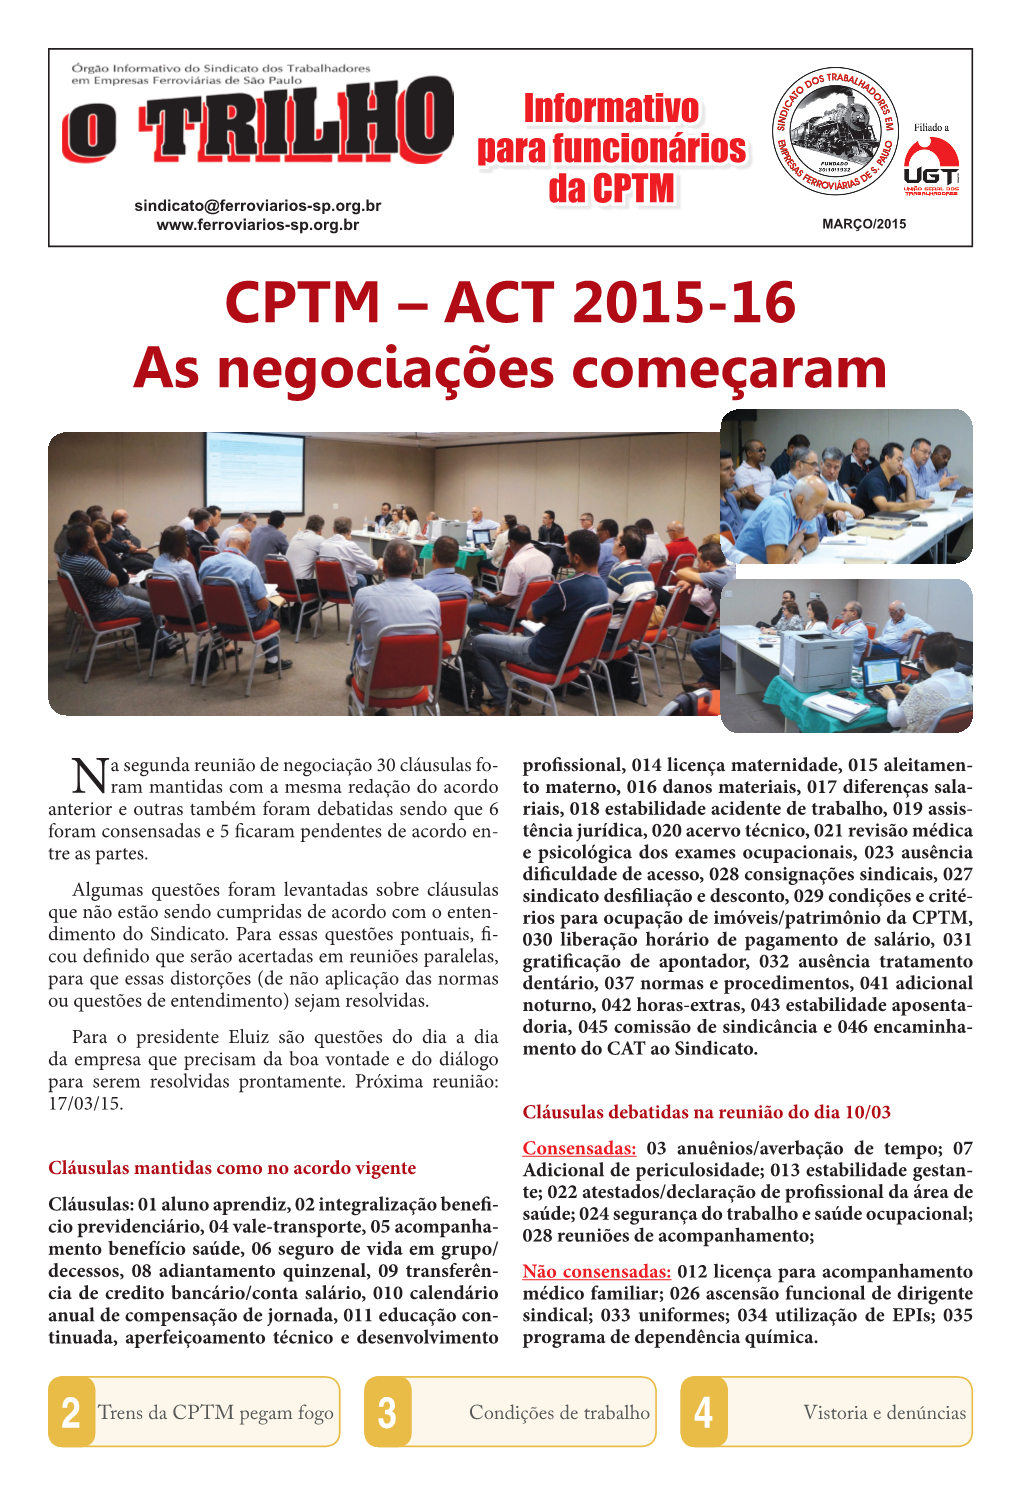 CPTM – ACT 2015-16 As Negociações Começaram